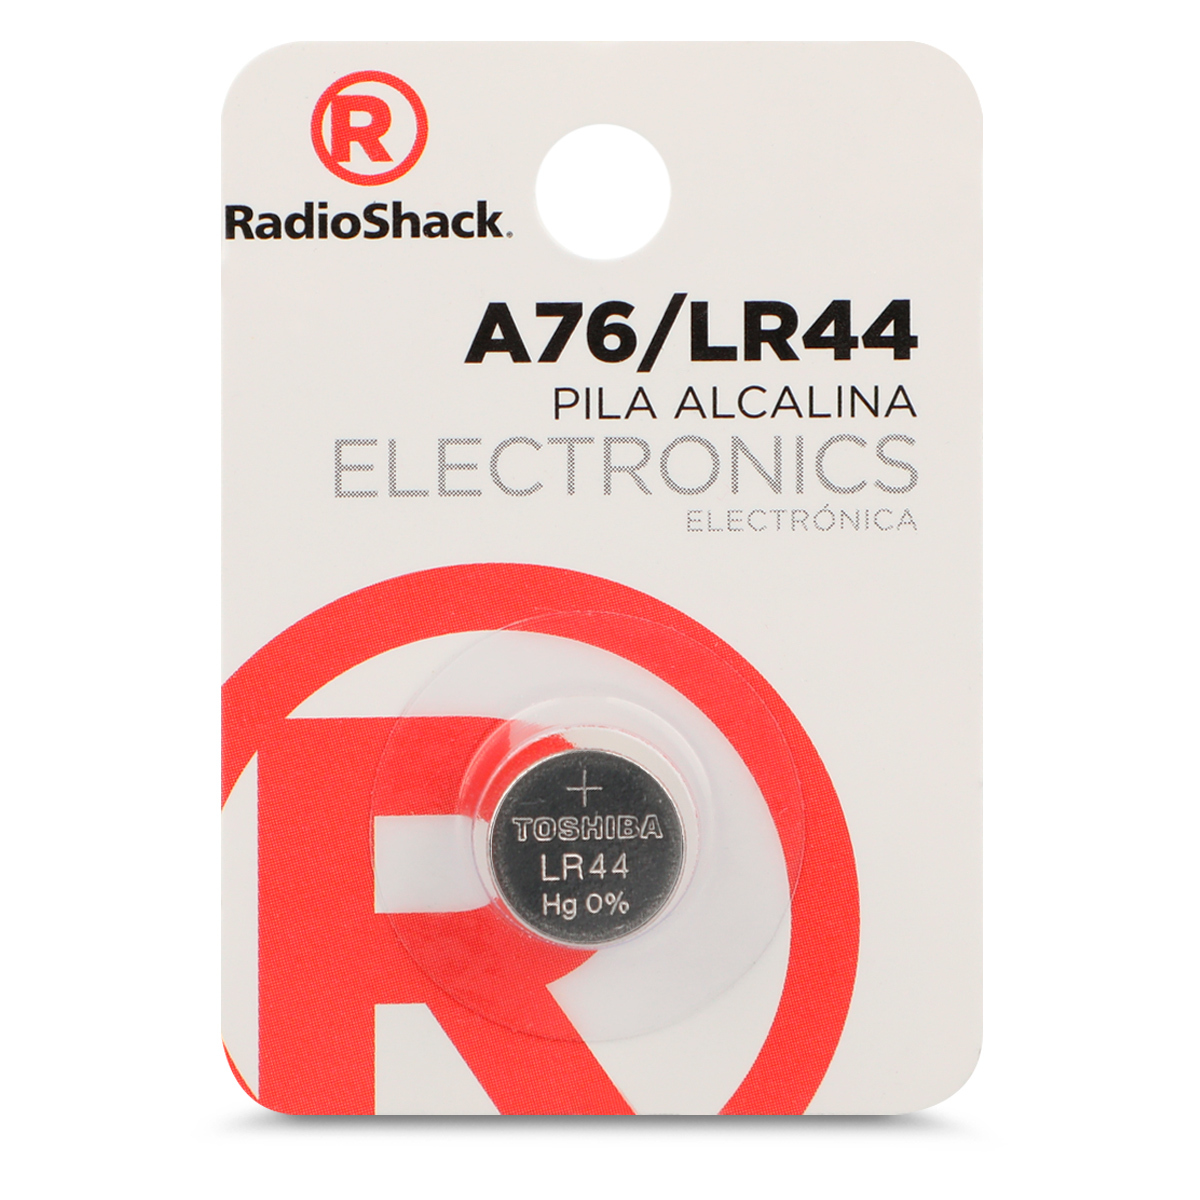 Pilas de Litio Botón CR 2025 RadioShack 4 piezas, Pilas Litio, Pilas y  Baterías, Originales RadioShack, Todas, Categoría